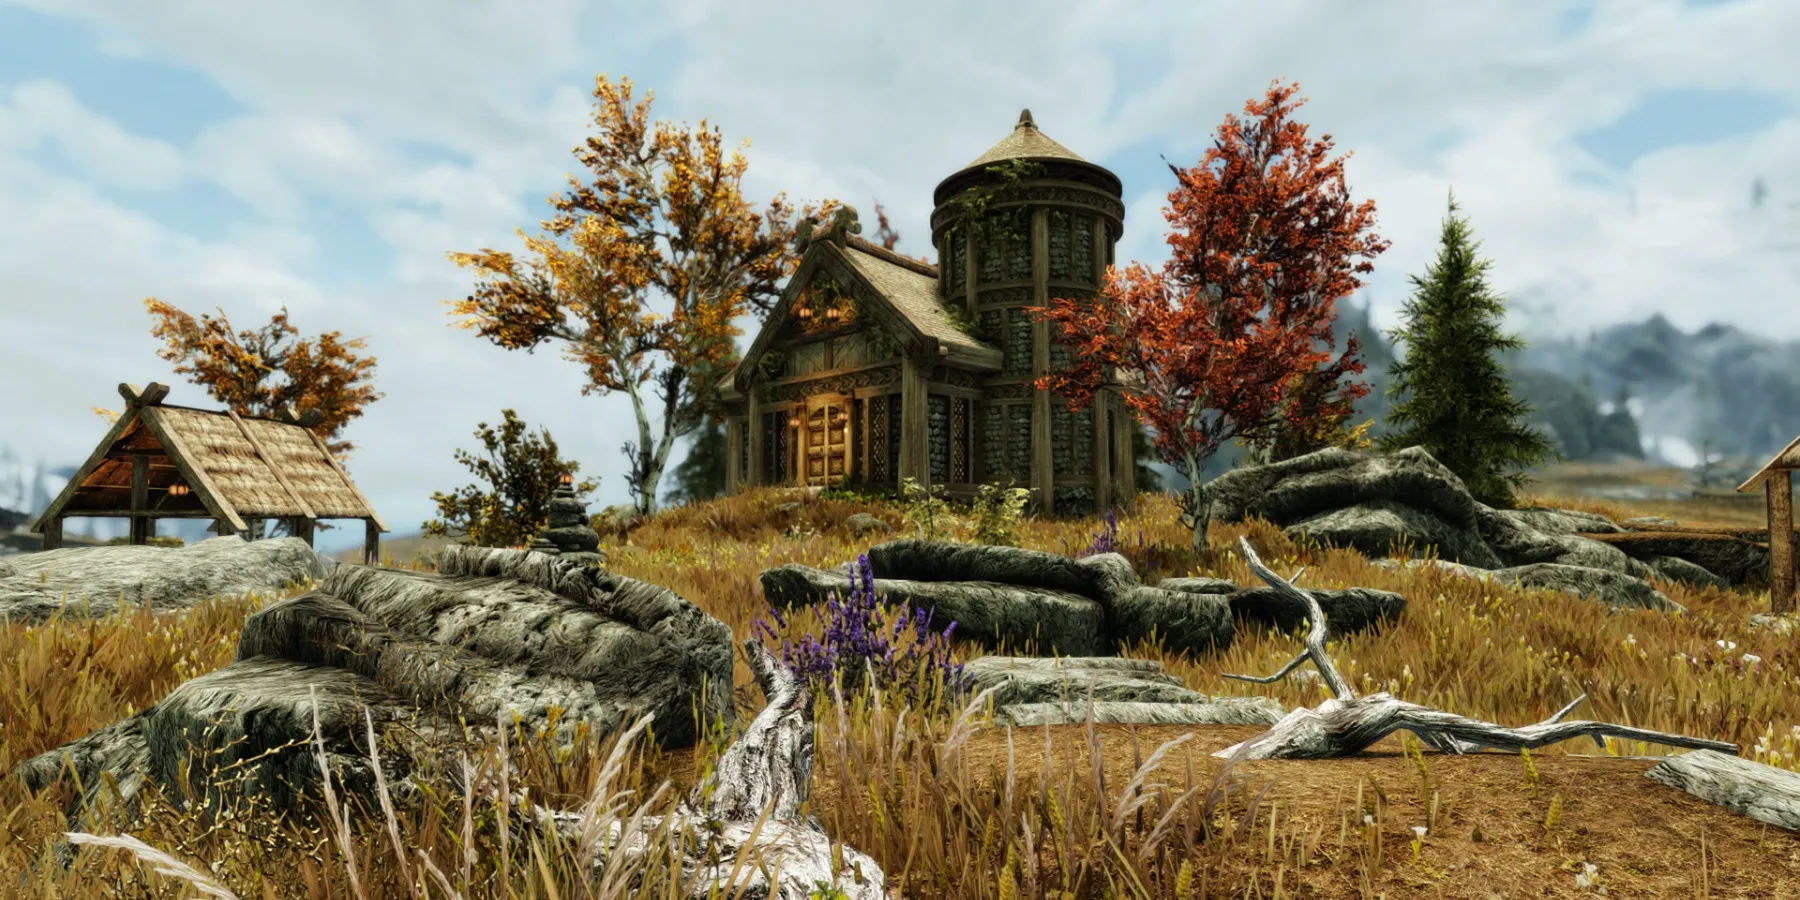 Capture d'écran de Skyrim montrant la maison de Tundra Homestead à Whiterun.